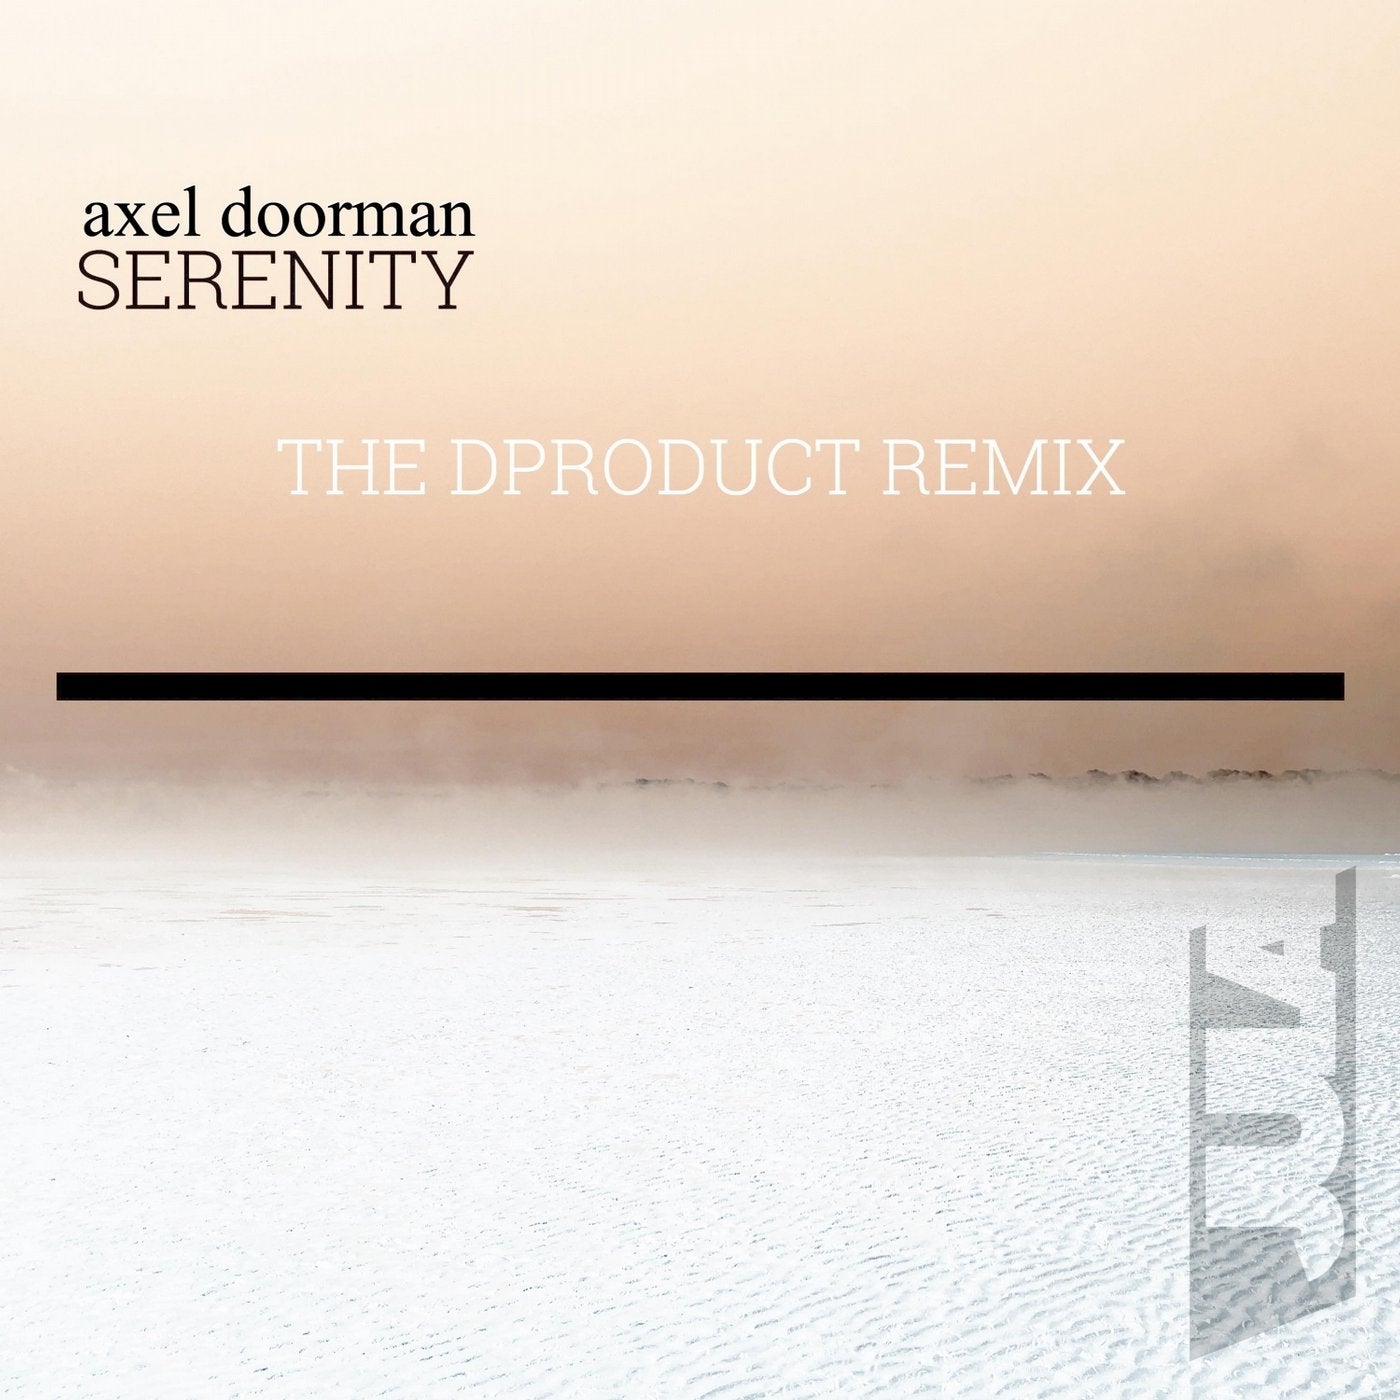 Serenity (Remix)